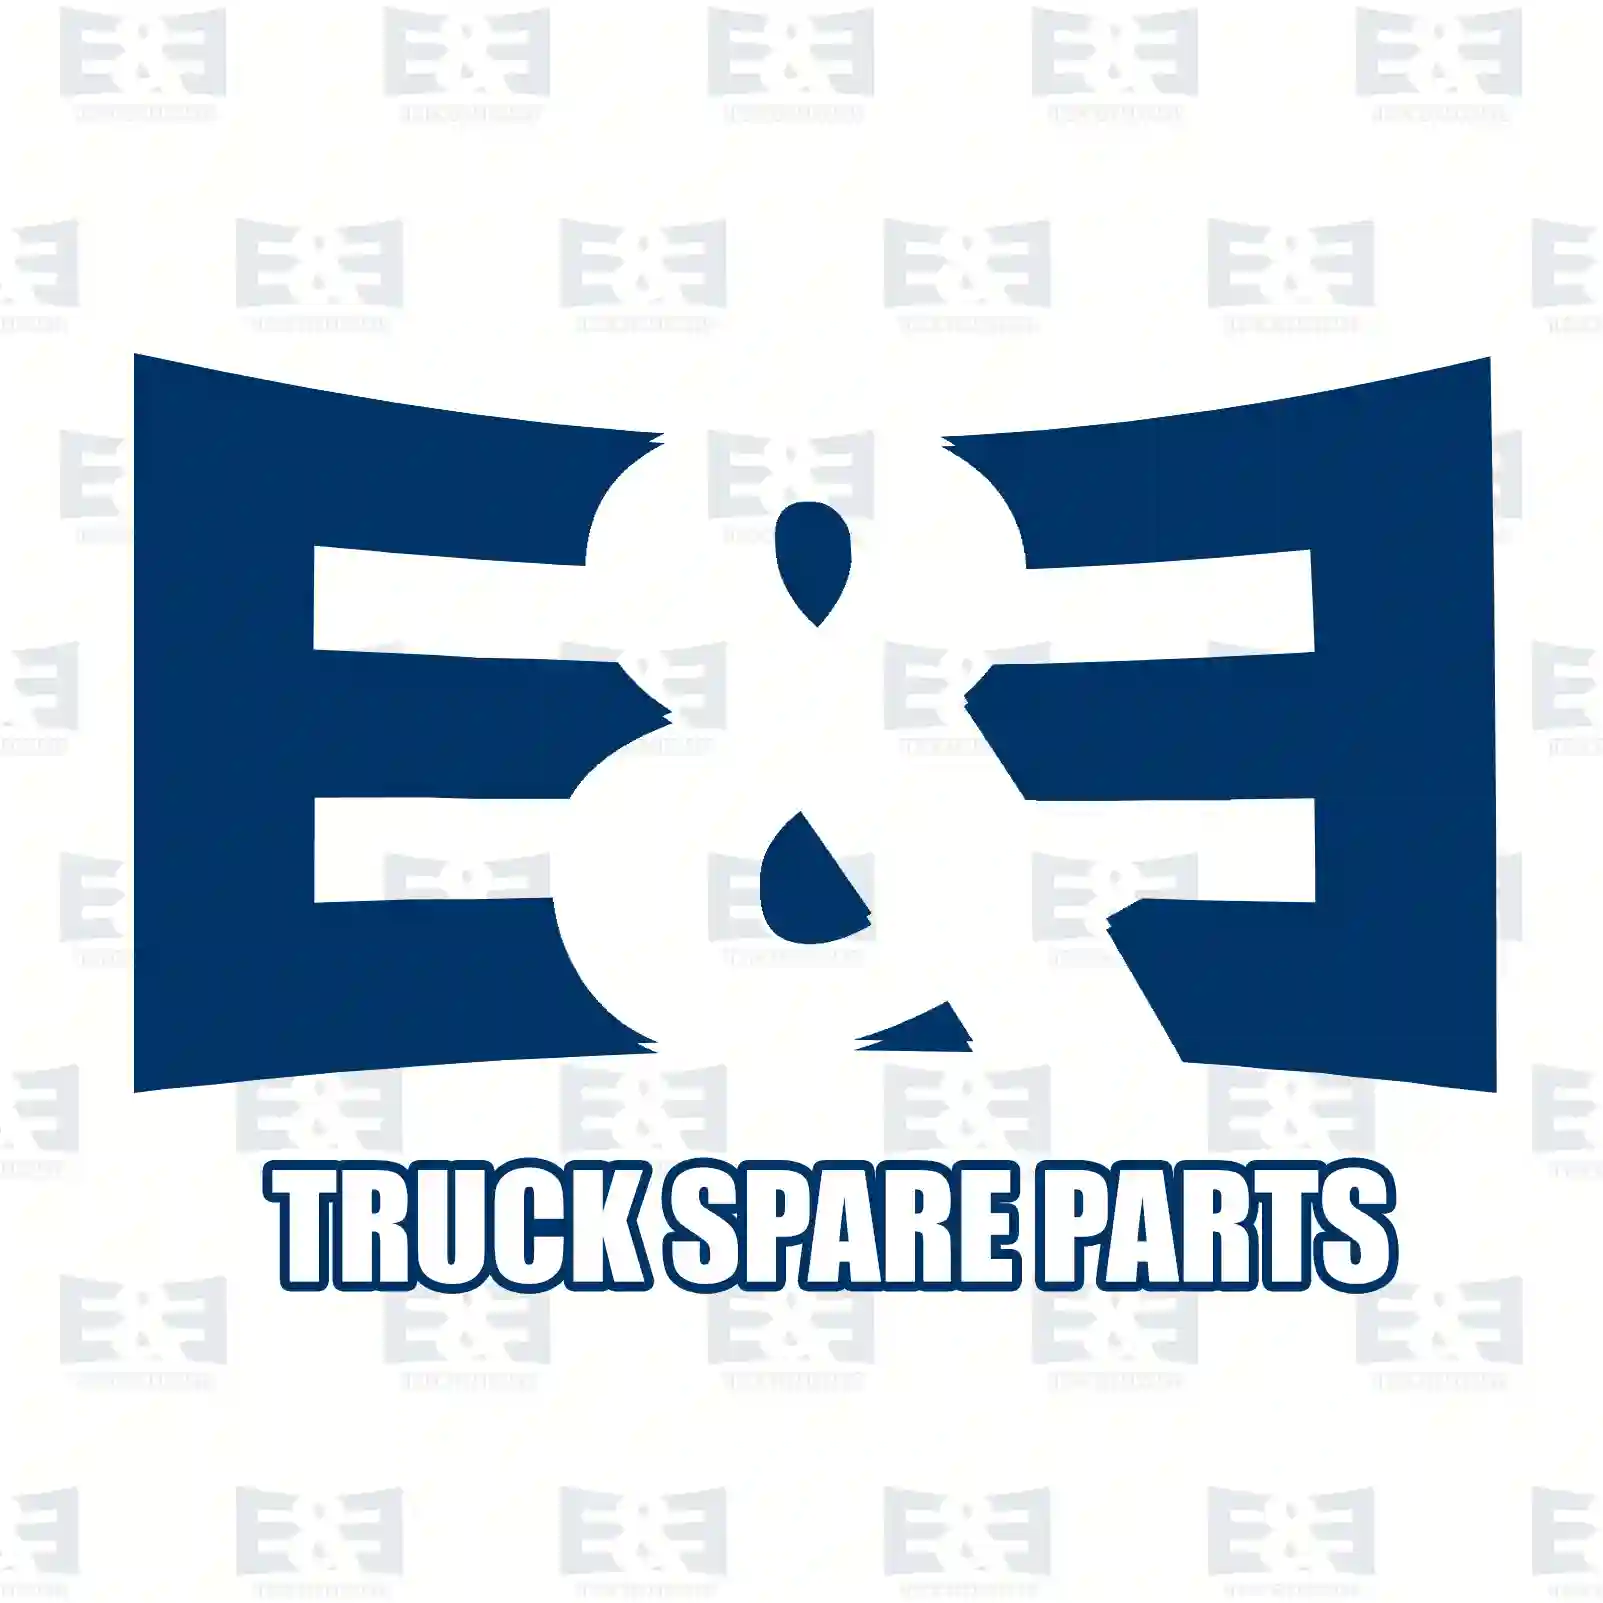 Brake wedge unit, 2E2295029, 6774200023, ZG50322-0008 ||  2E2295029 E&E Truck Spare Parts | Truck Spare Parts, Auotomotive Spare Parts Brake wedge unit, 2E2295029, 6774200023, ZG50322-0008 ||  2E2295029 E&E Truck Spare Parts | Truck Spare Parts, Auotomotive Spare Parts